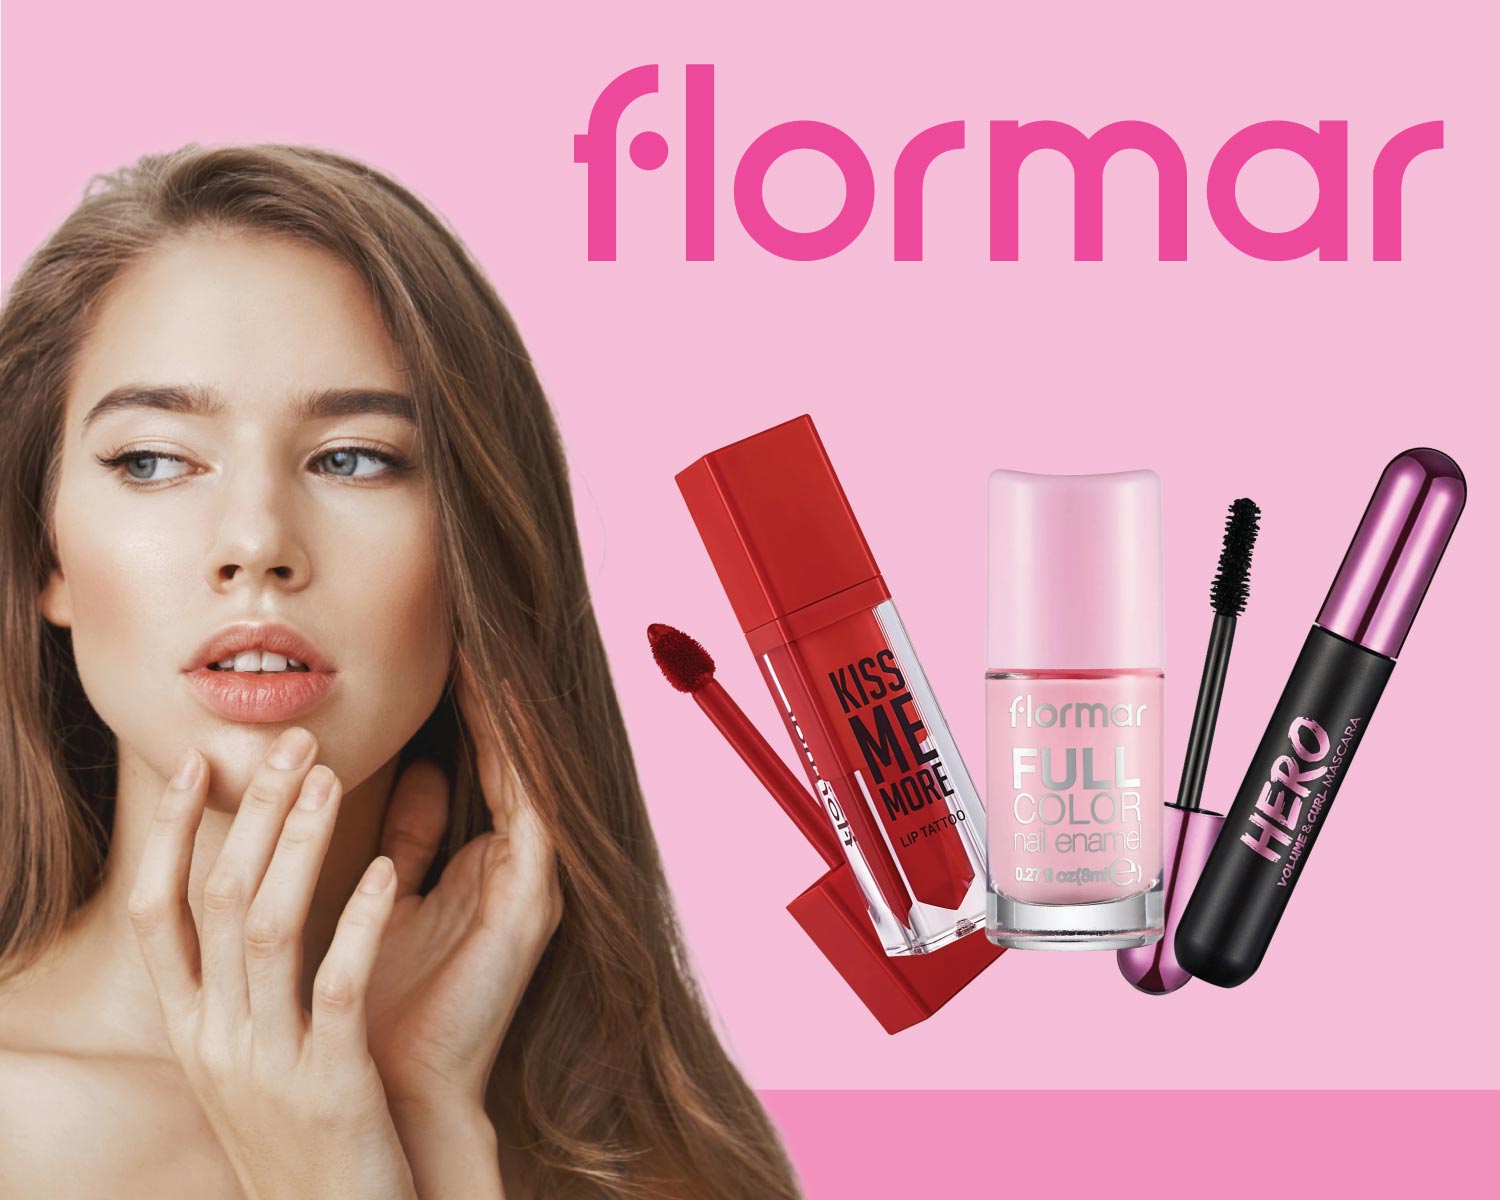 Shop Flormar cosmetics